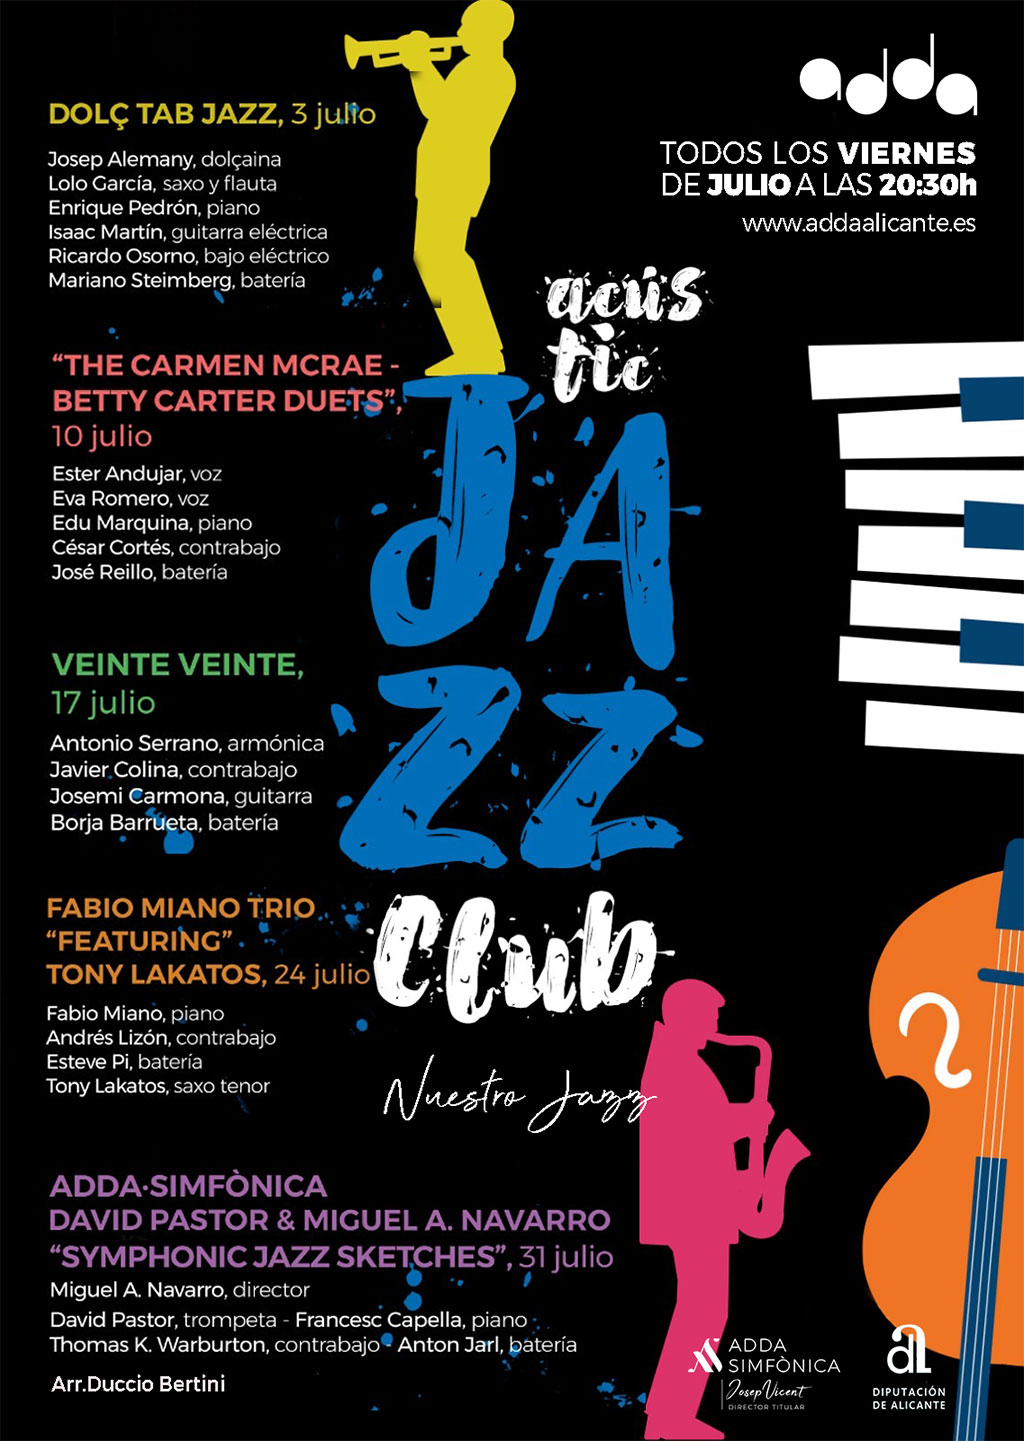 Acustic Jazz Club: Programme